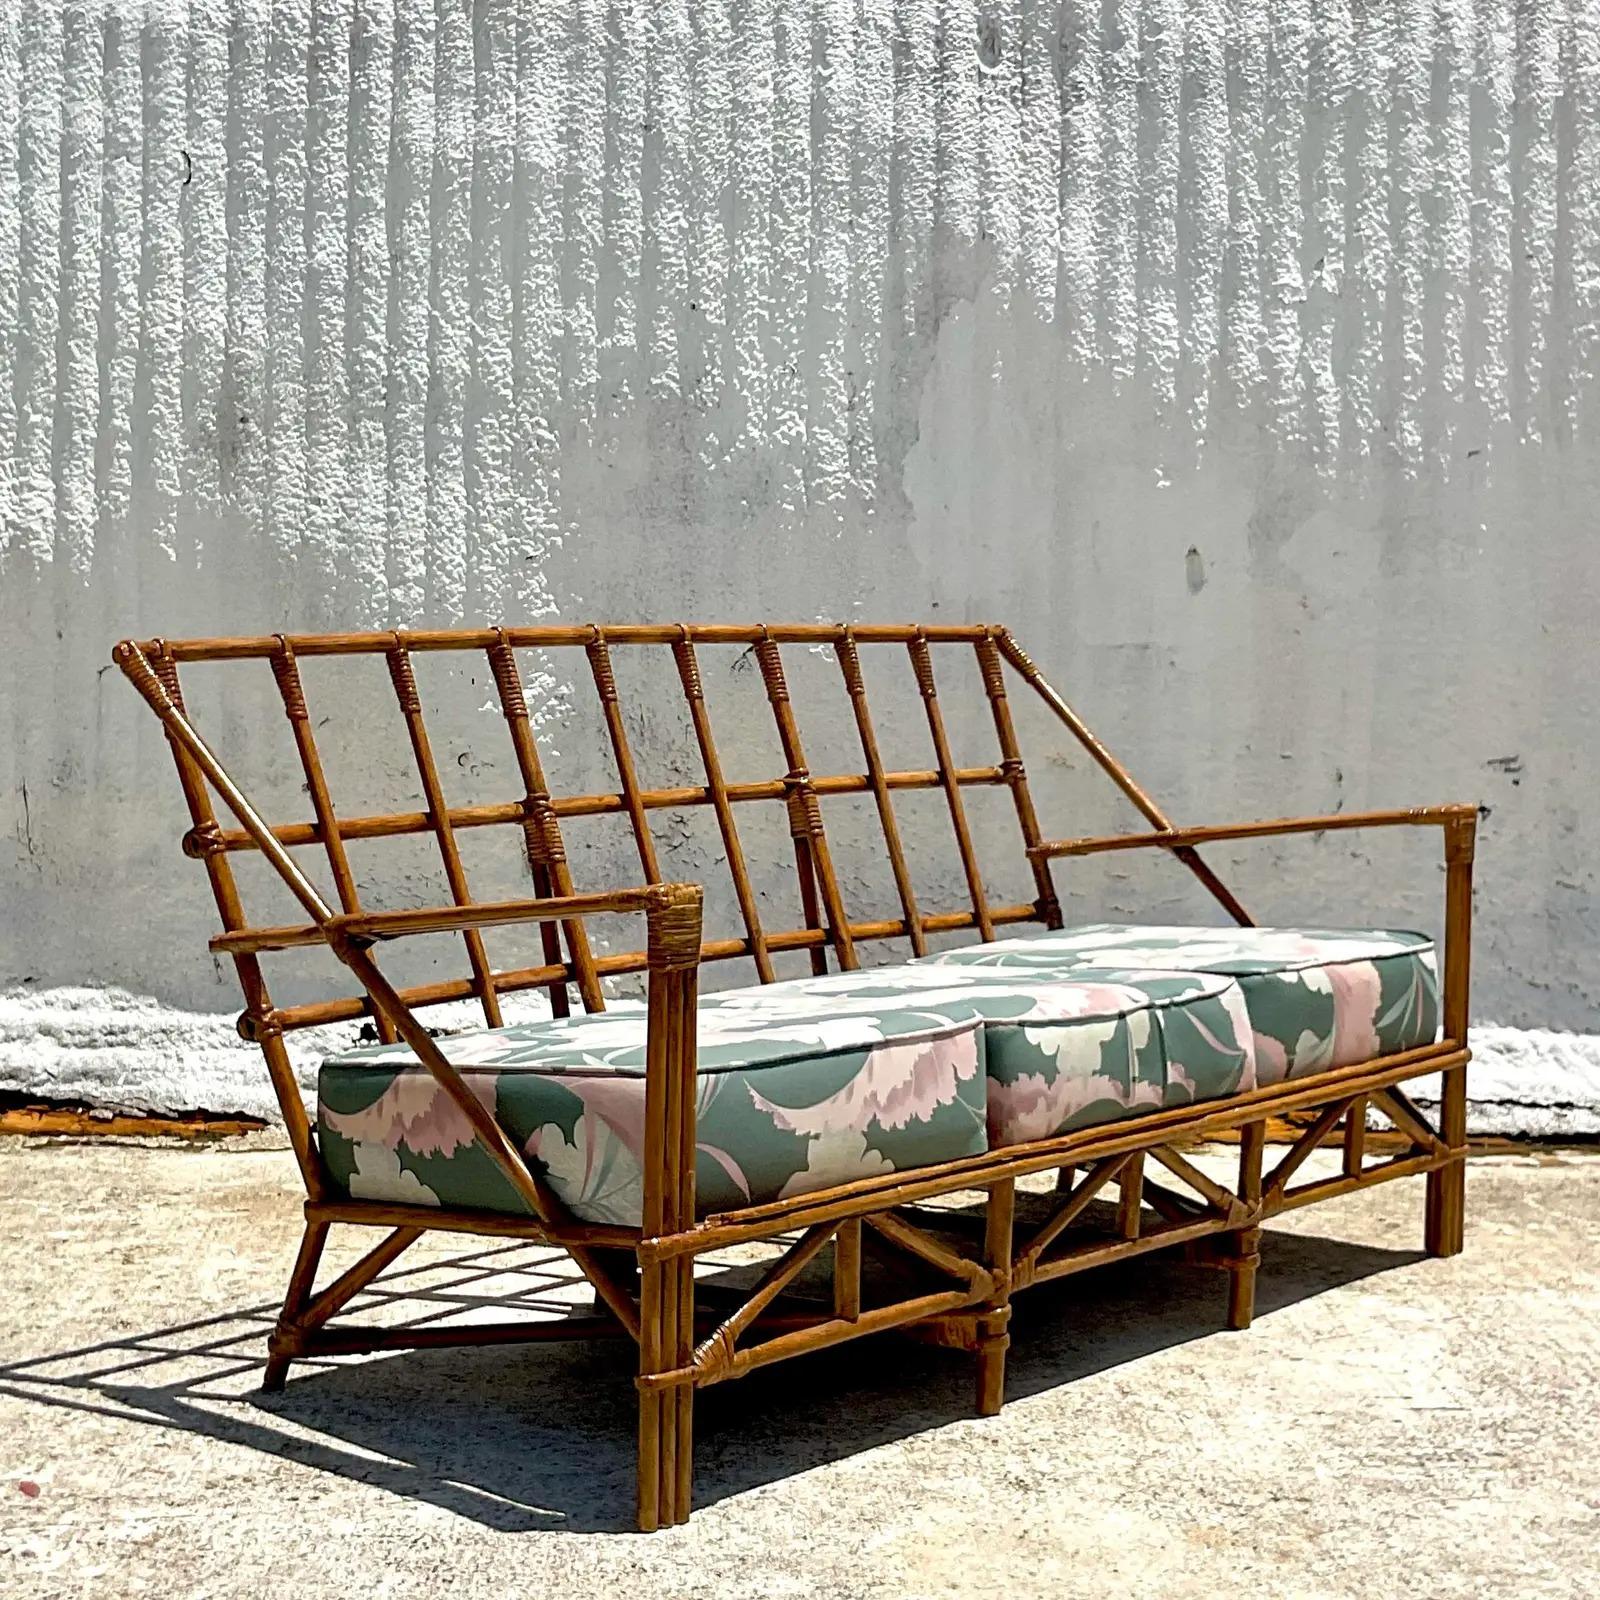 Ein fabelhaftes Vintage-Rattan-Sofa von Costal. Ein schickes Gitterdesign mit vielen klaren Linien. Passende Stühle sind ebenfalls erhältlich. Erworben aus einem Nachlass in Palm Beach.

Das Sofa ist in tollem Vintage-Zustand. Kleinere Schrammen und